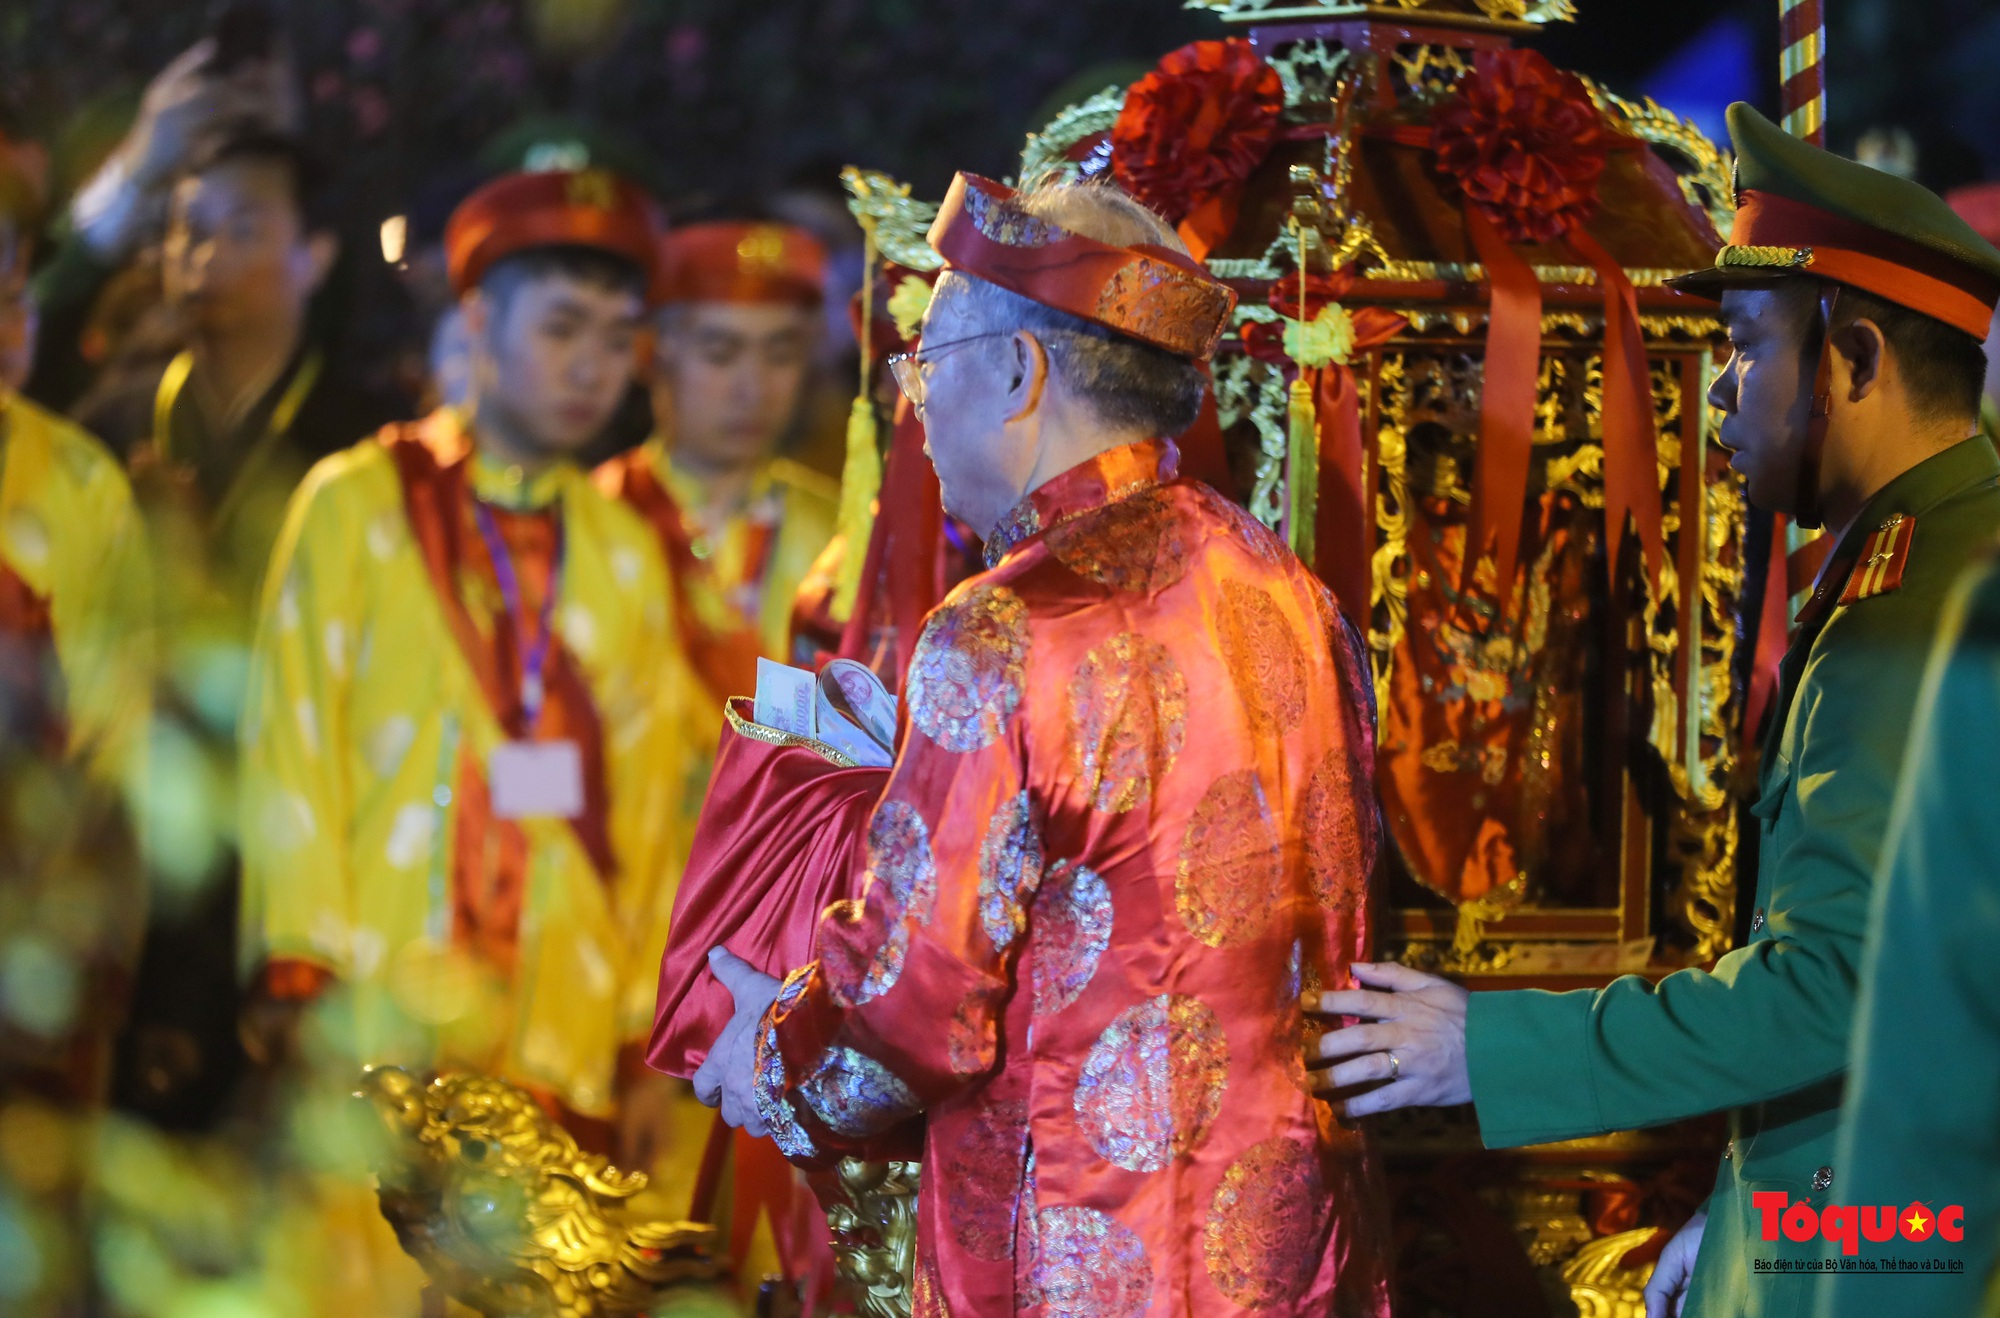 Hàng ngàn người đổ về dự lễ khai ấn đền Trần diễn ra vào lúc nửa đêm ở Nam Định - Ảnh 9.